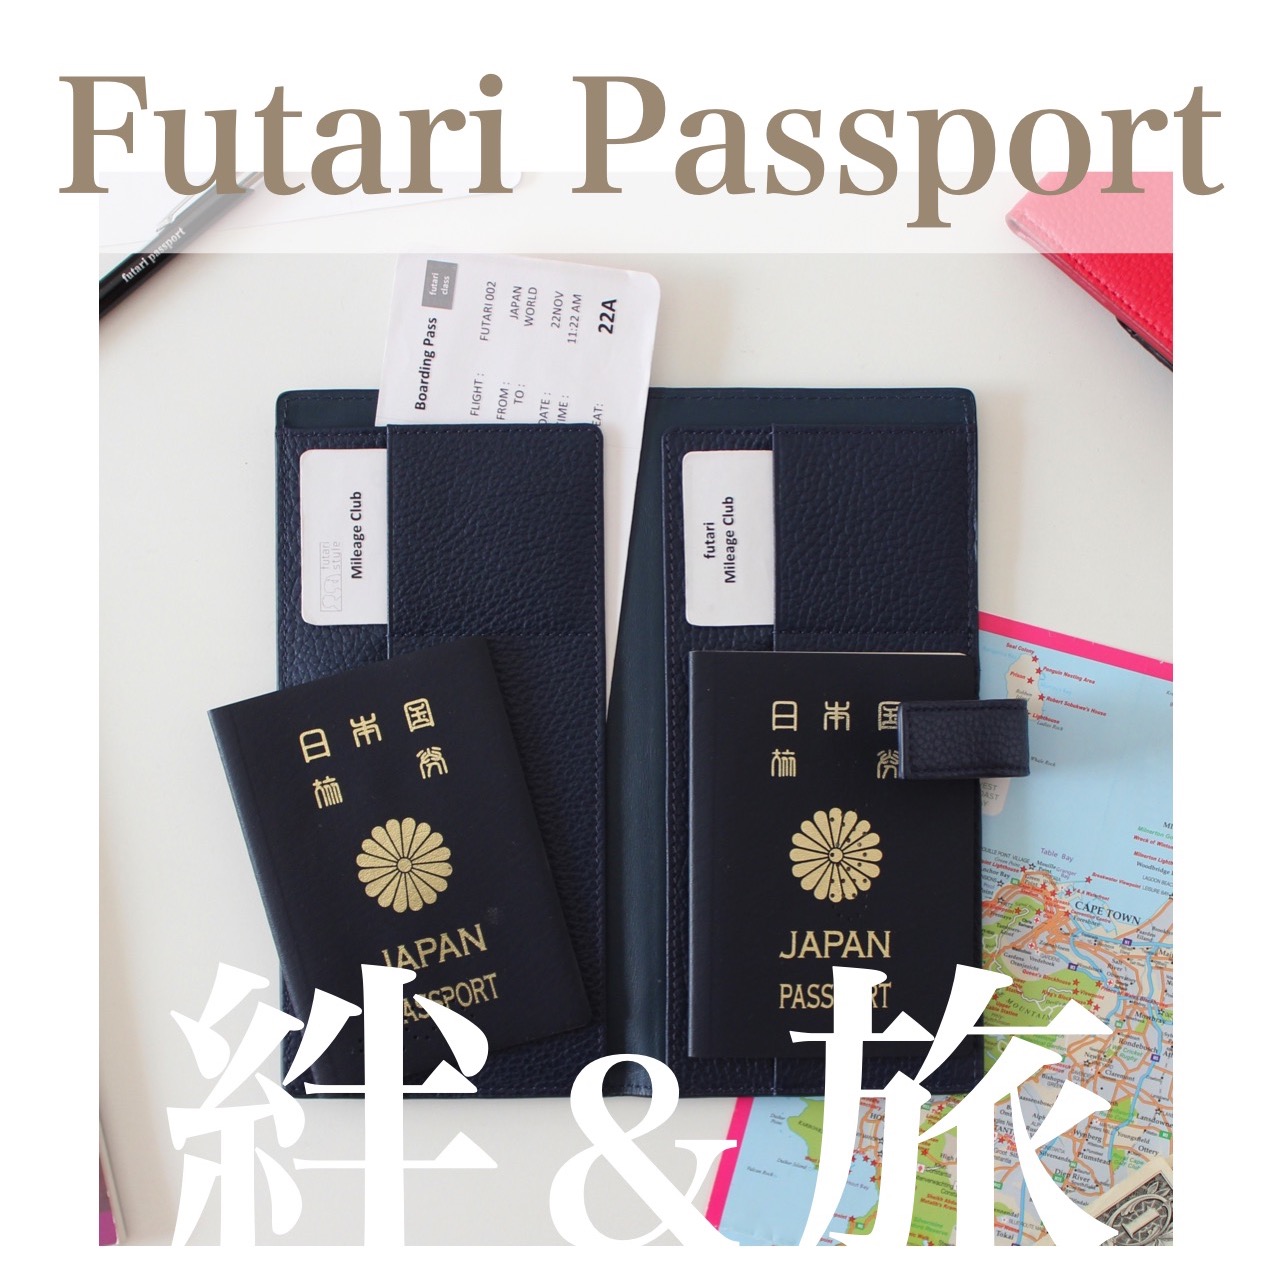 日本】futari passport パスポートケース 海外旅行・結婚祝い・ハネムーンに :: パスポートケース・ウォレット :: トラベルグッズ  :: ライフスタイル